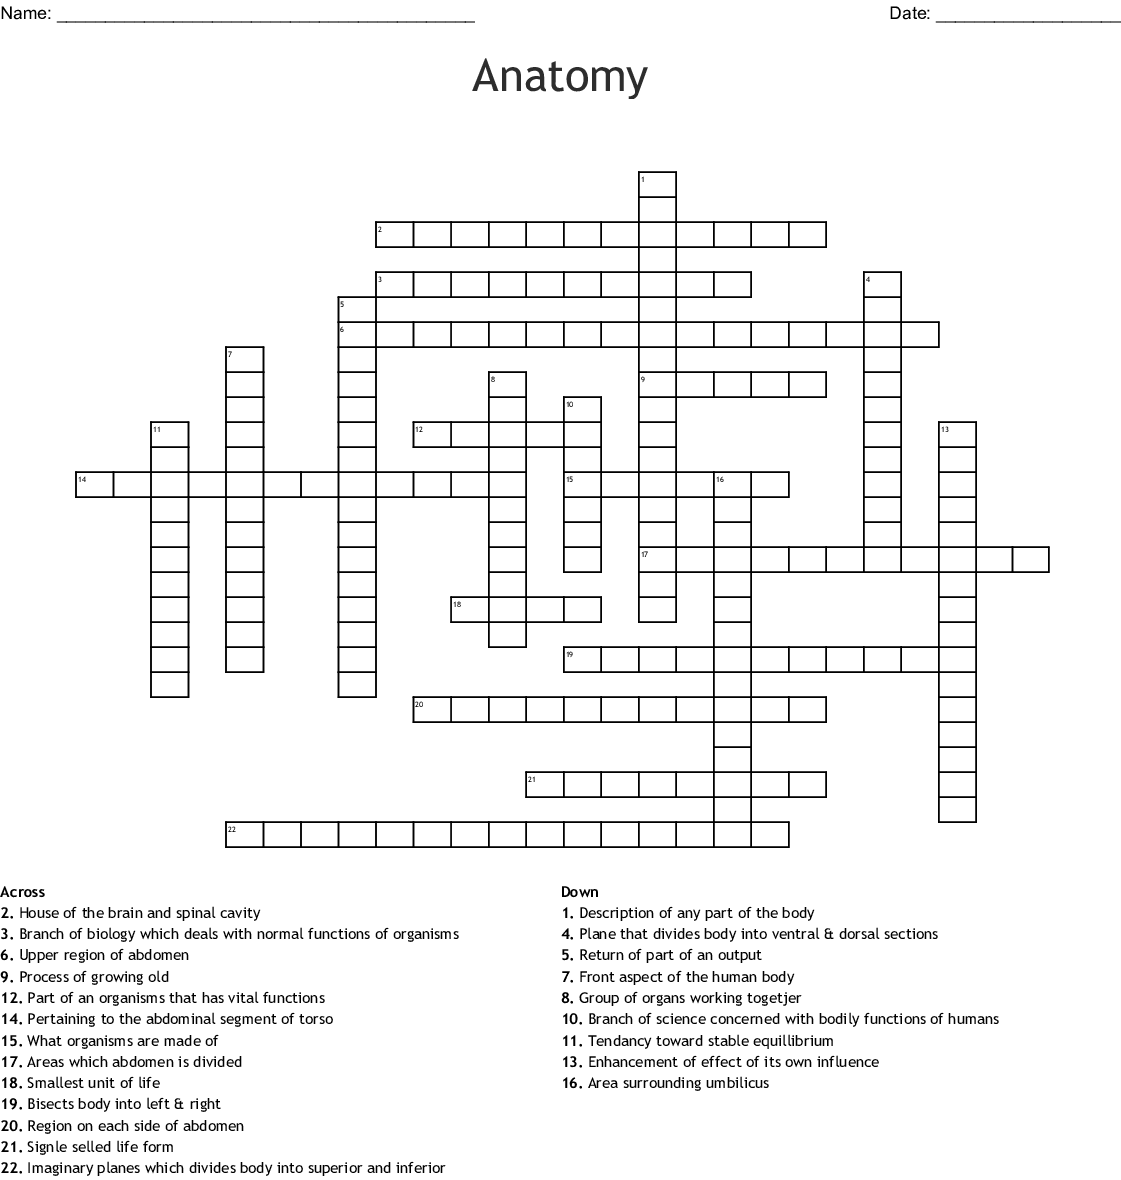 Free Printable Anatomy Crossword Puzzles